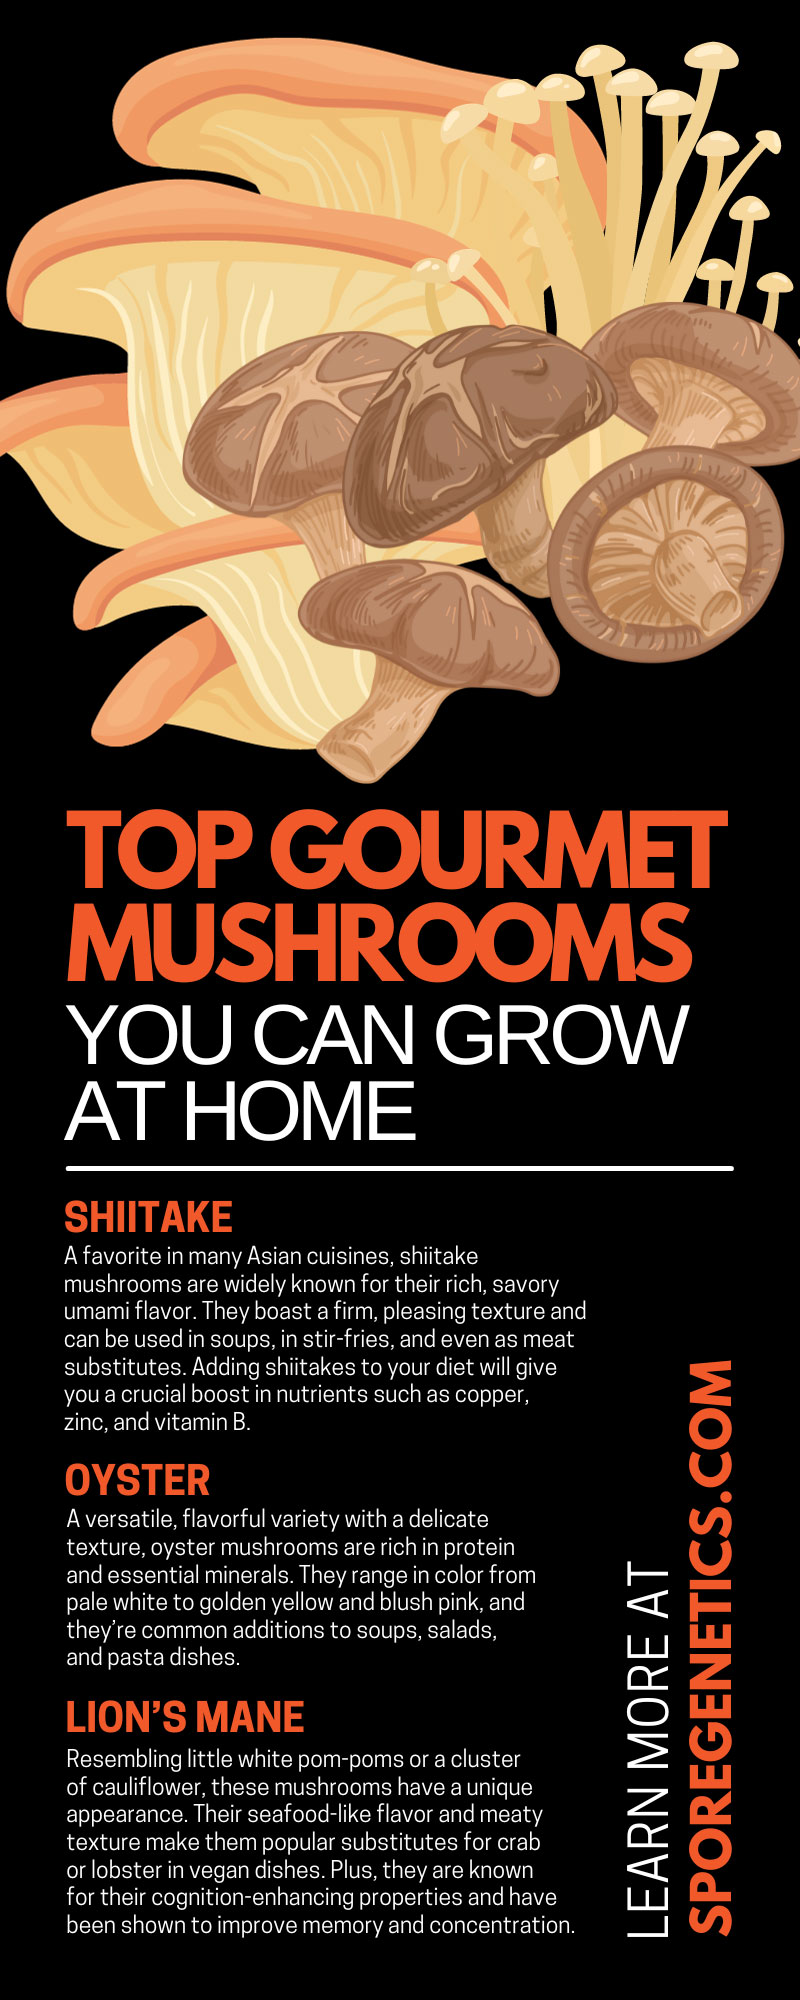 Top 8 Gourmet Mushrooms You Can Grow at Home